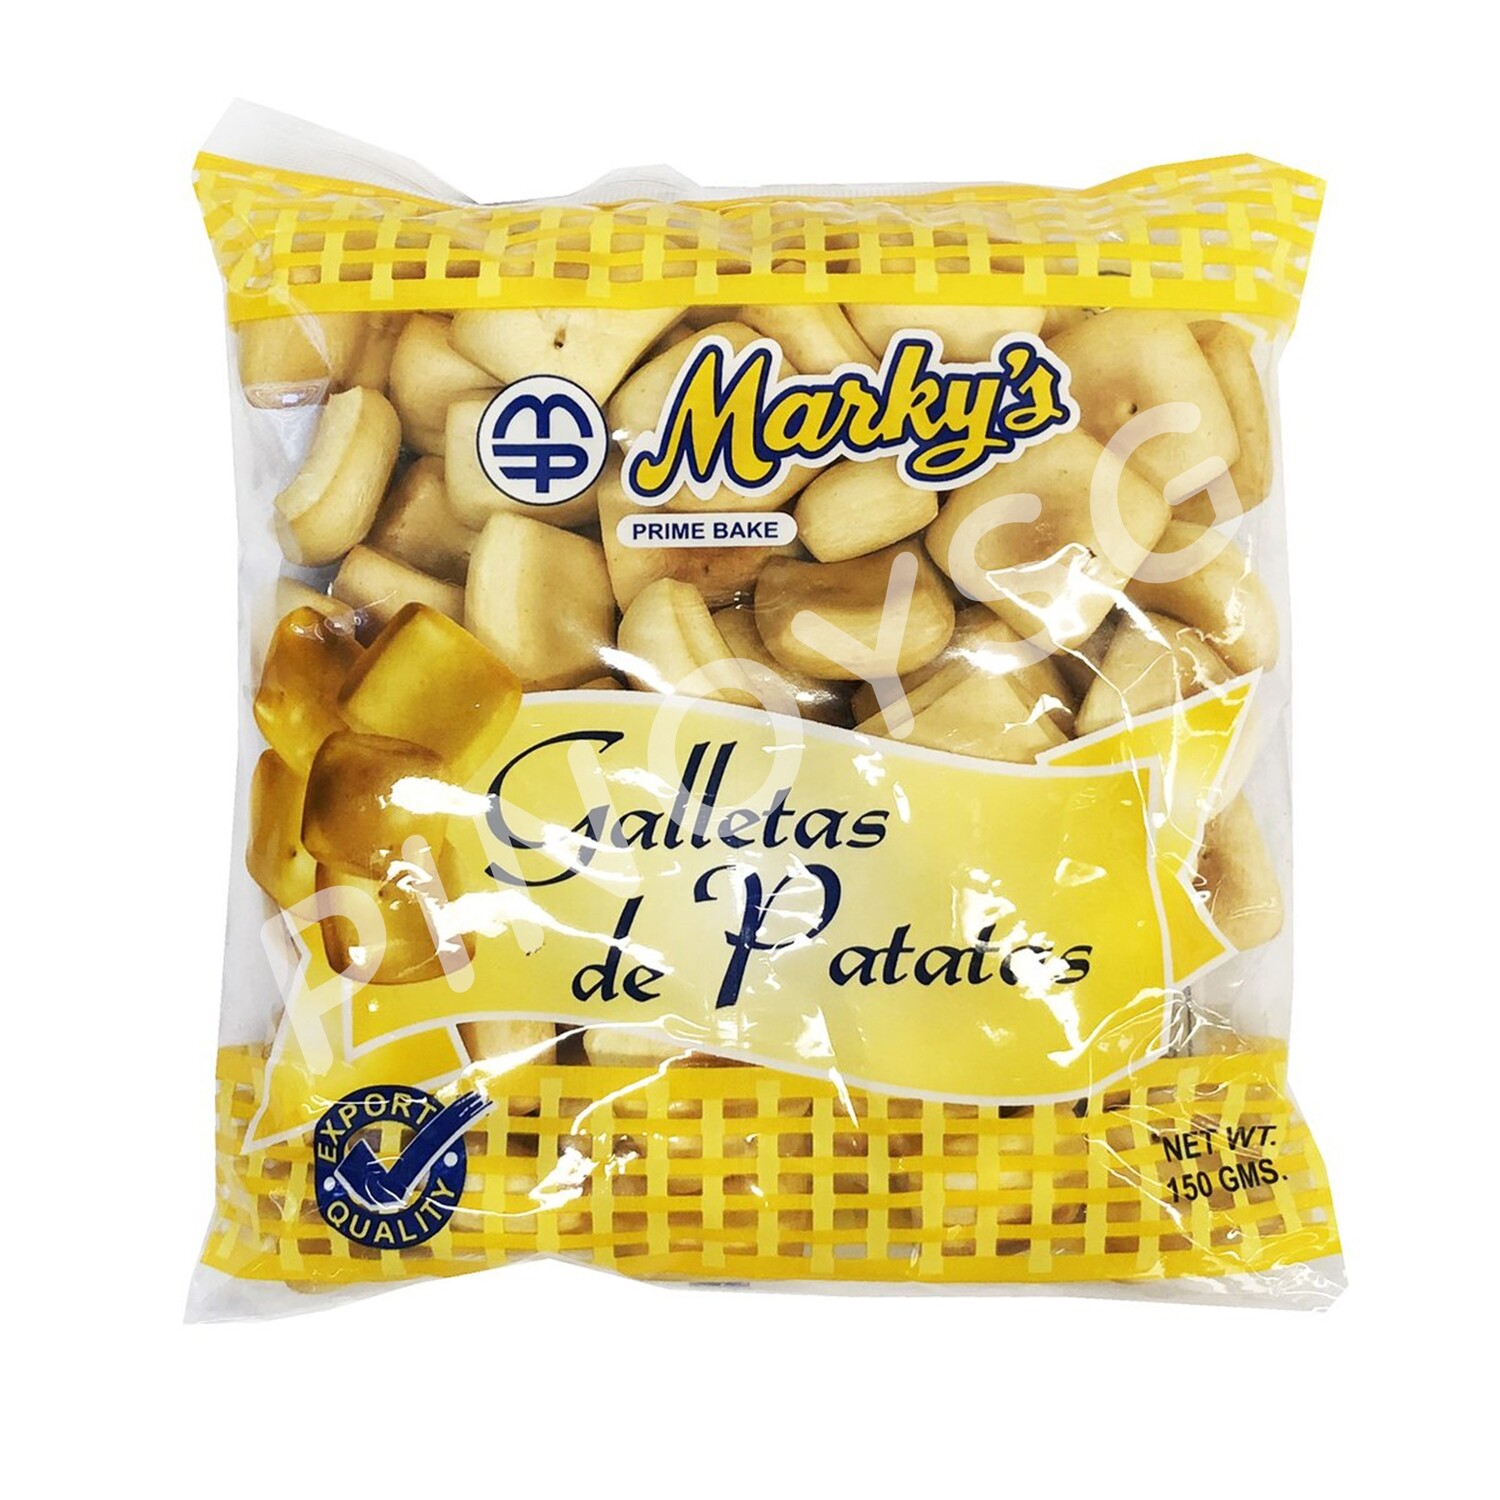 Marky's Galletas de Patatas 150g